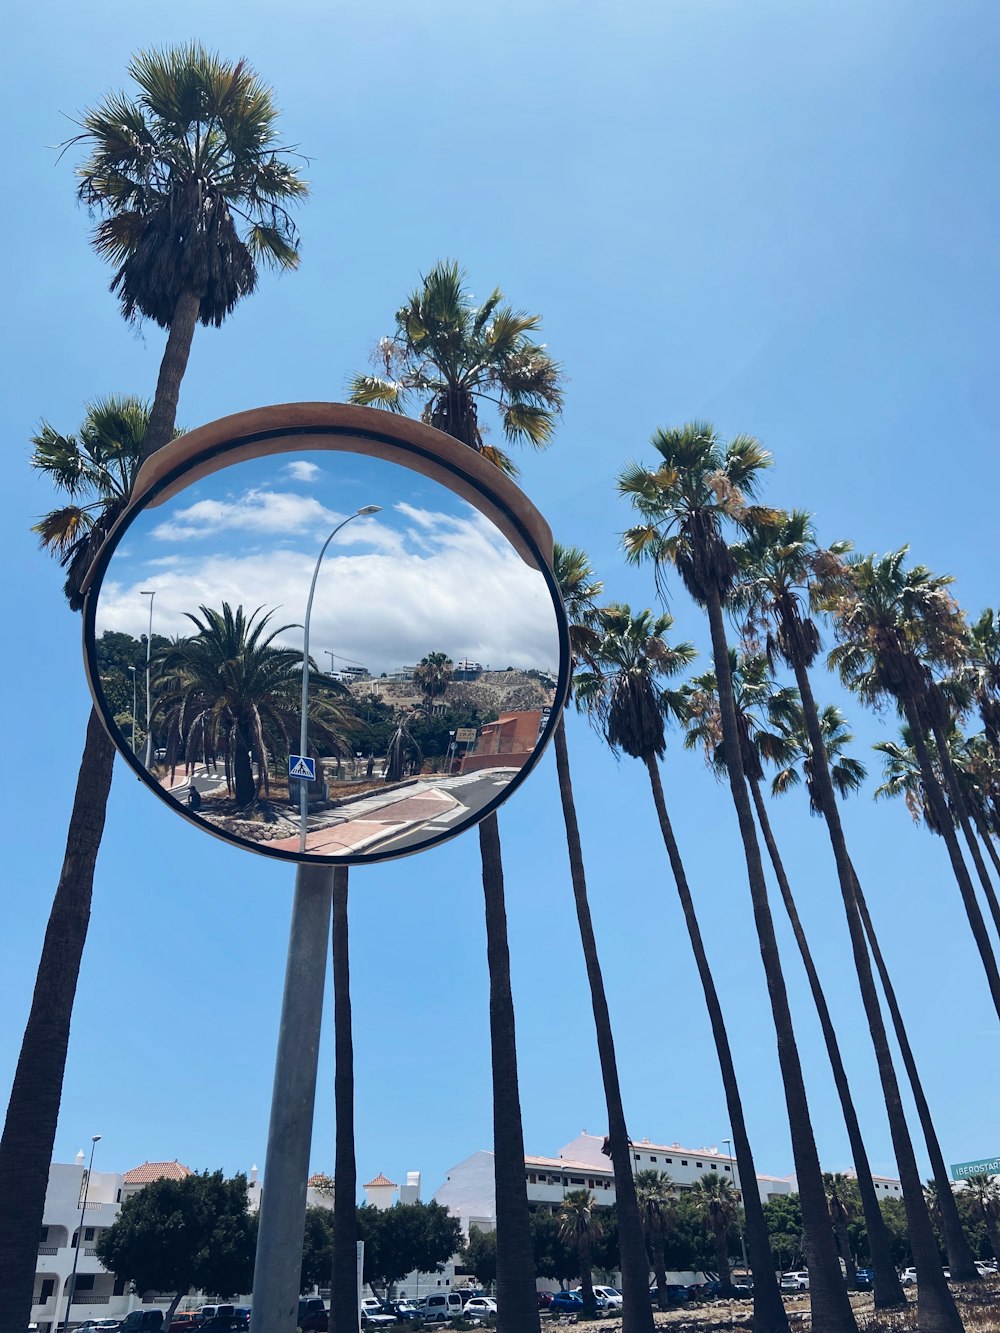 Foto zum Thema Ein spiegel auf einer stange mit palmen im hintergrund –  Kostenloses Bild zu Natur auf Unsplash